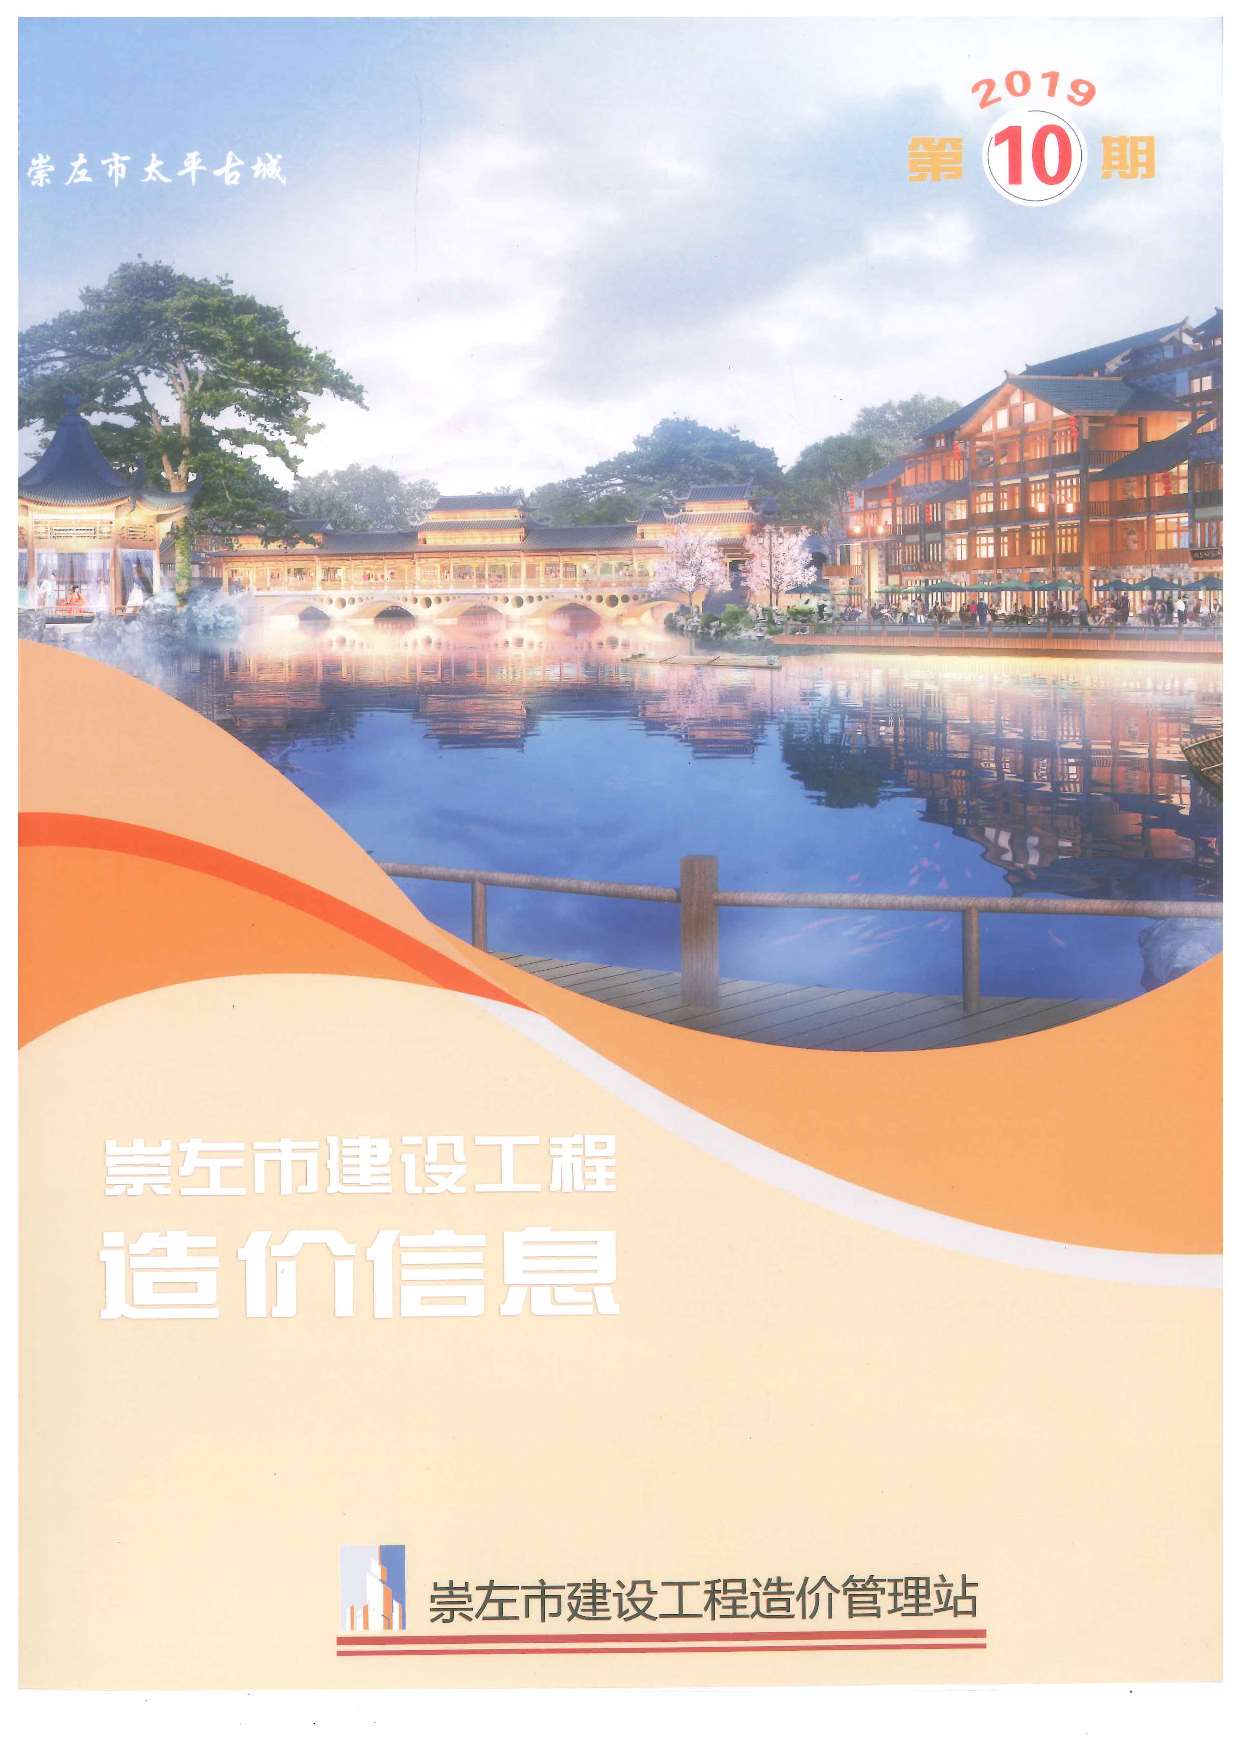 崇左市2019年10月工程信息价_崇左市信息价期刊PDF扫描件电子版